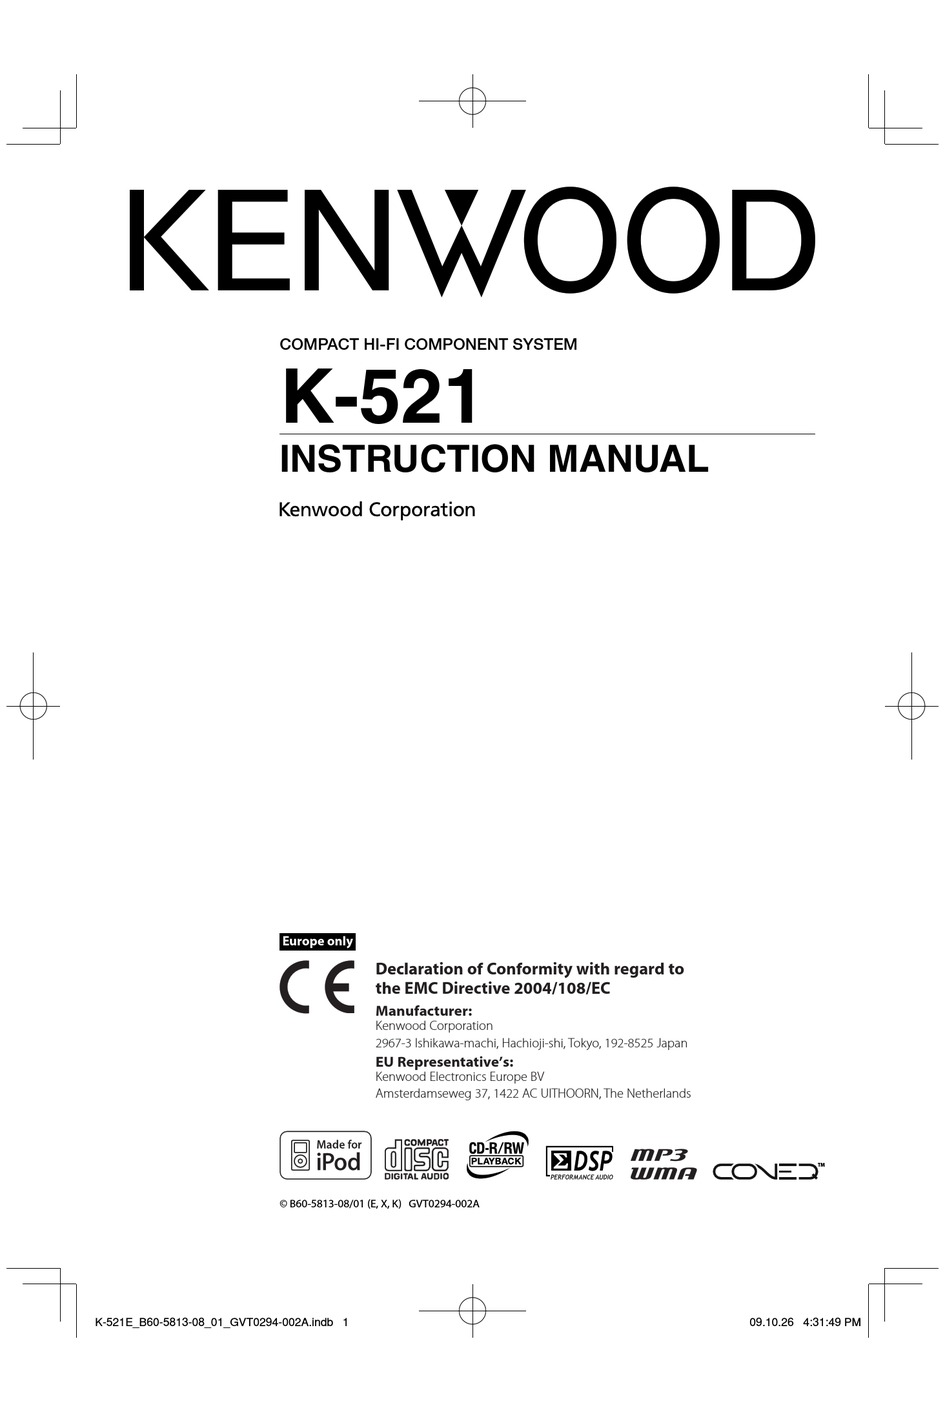 KENWOOD K-521 INSTRUCTION MANUAL Pdf Download | ManualsLib